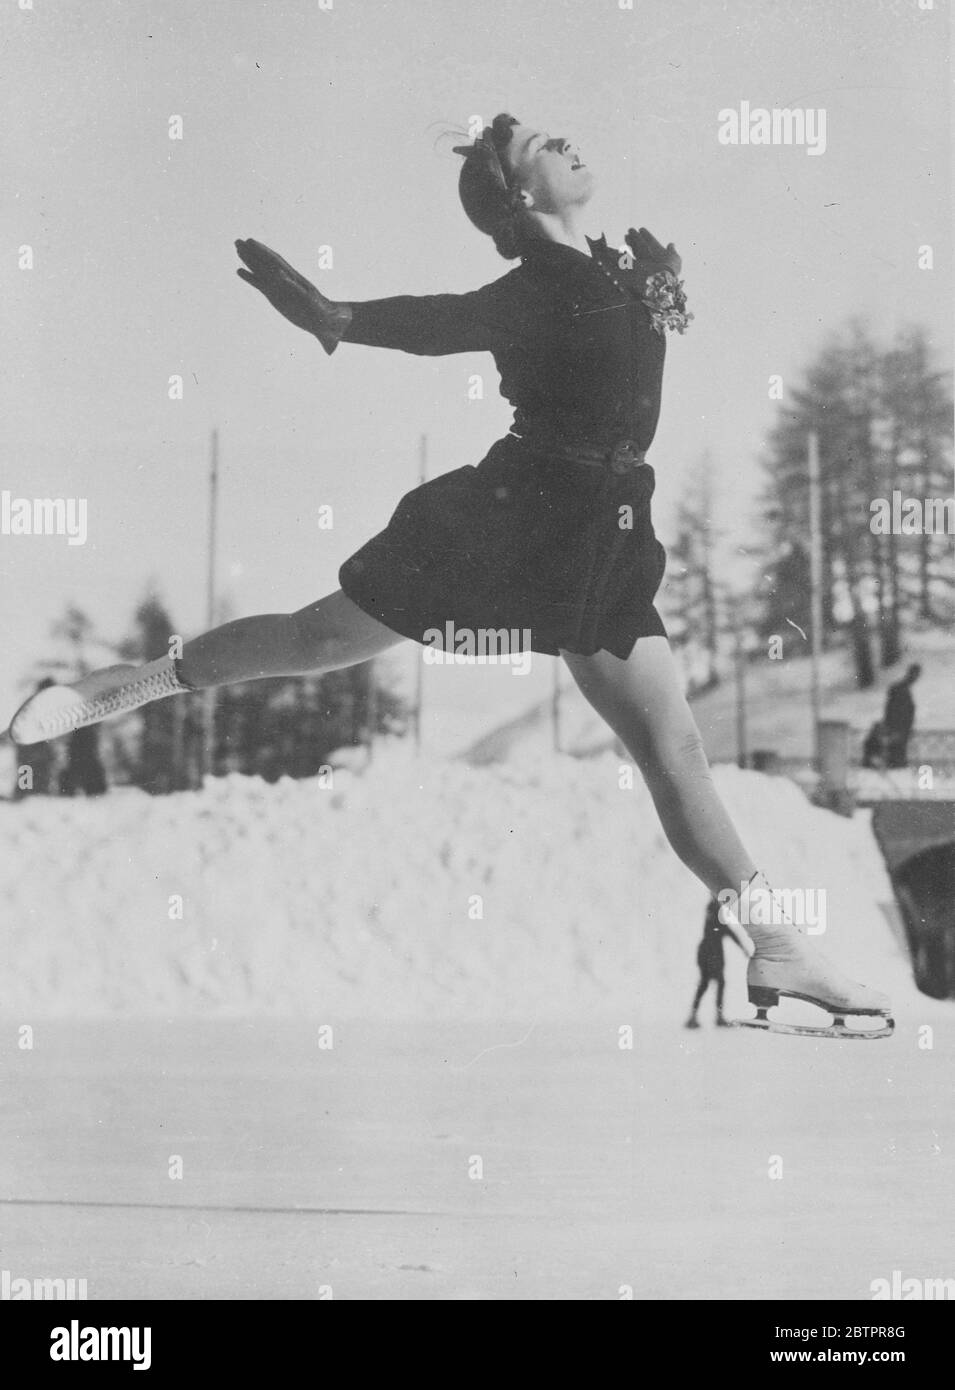 Licht wie Luft. Miss Megan Taylor, die britische Eiskunstläuferin, stellt die Schwerkraft vor eine anmutige Herausforderung, als sie in St. Moritz, Schweiz, für die Europameisterschaften trainiert. 19. Januar 1938 Stockfoto